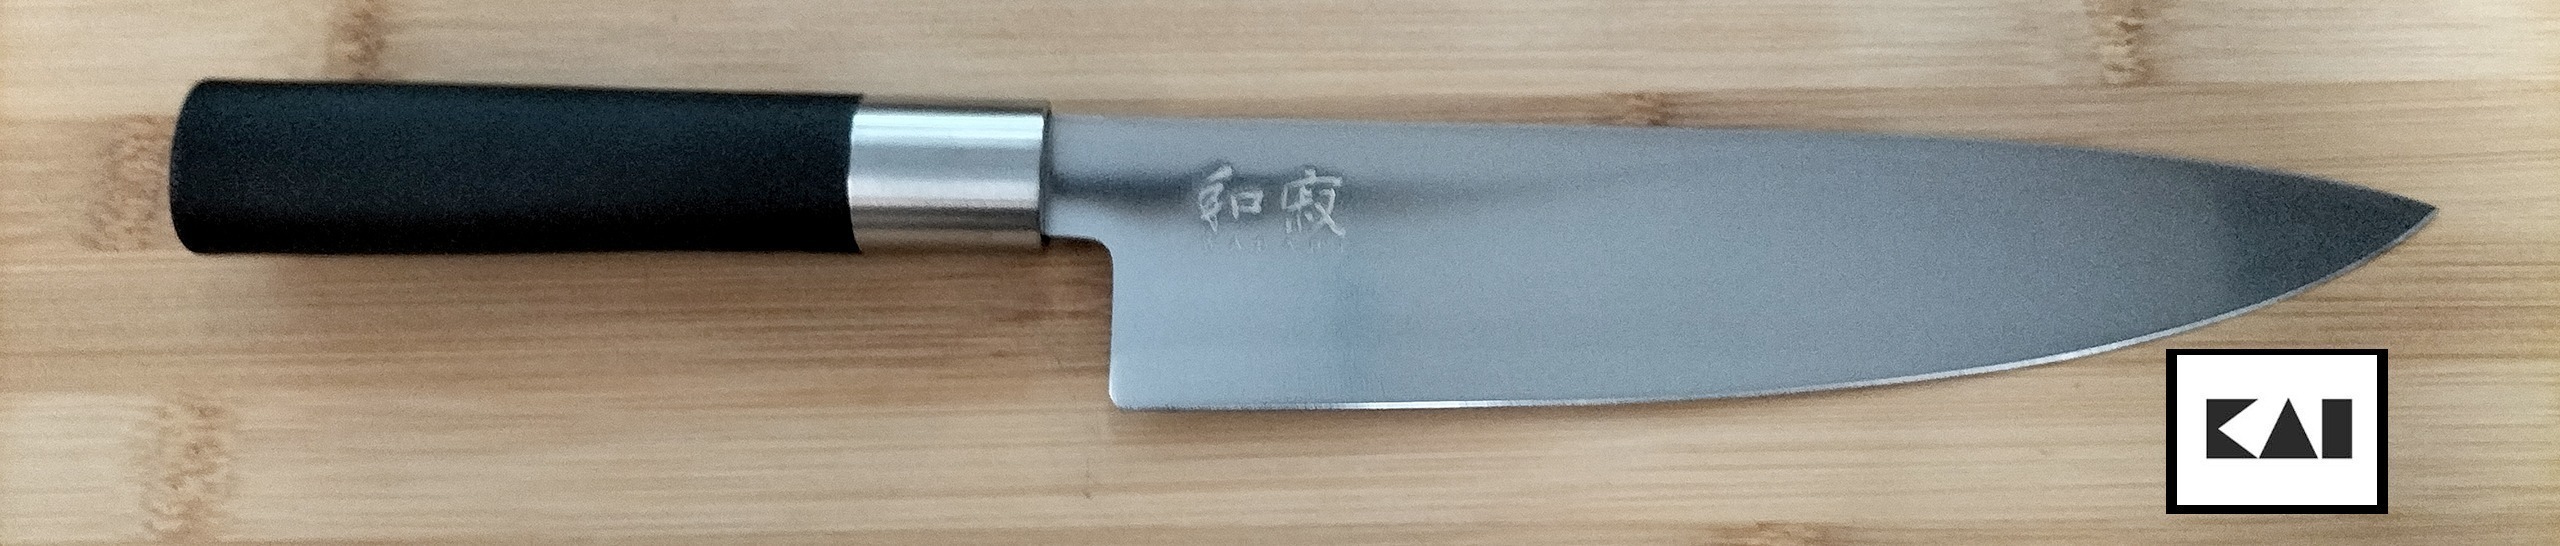 couteau japonais kai wasabi couteau